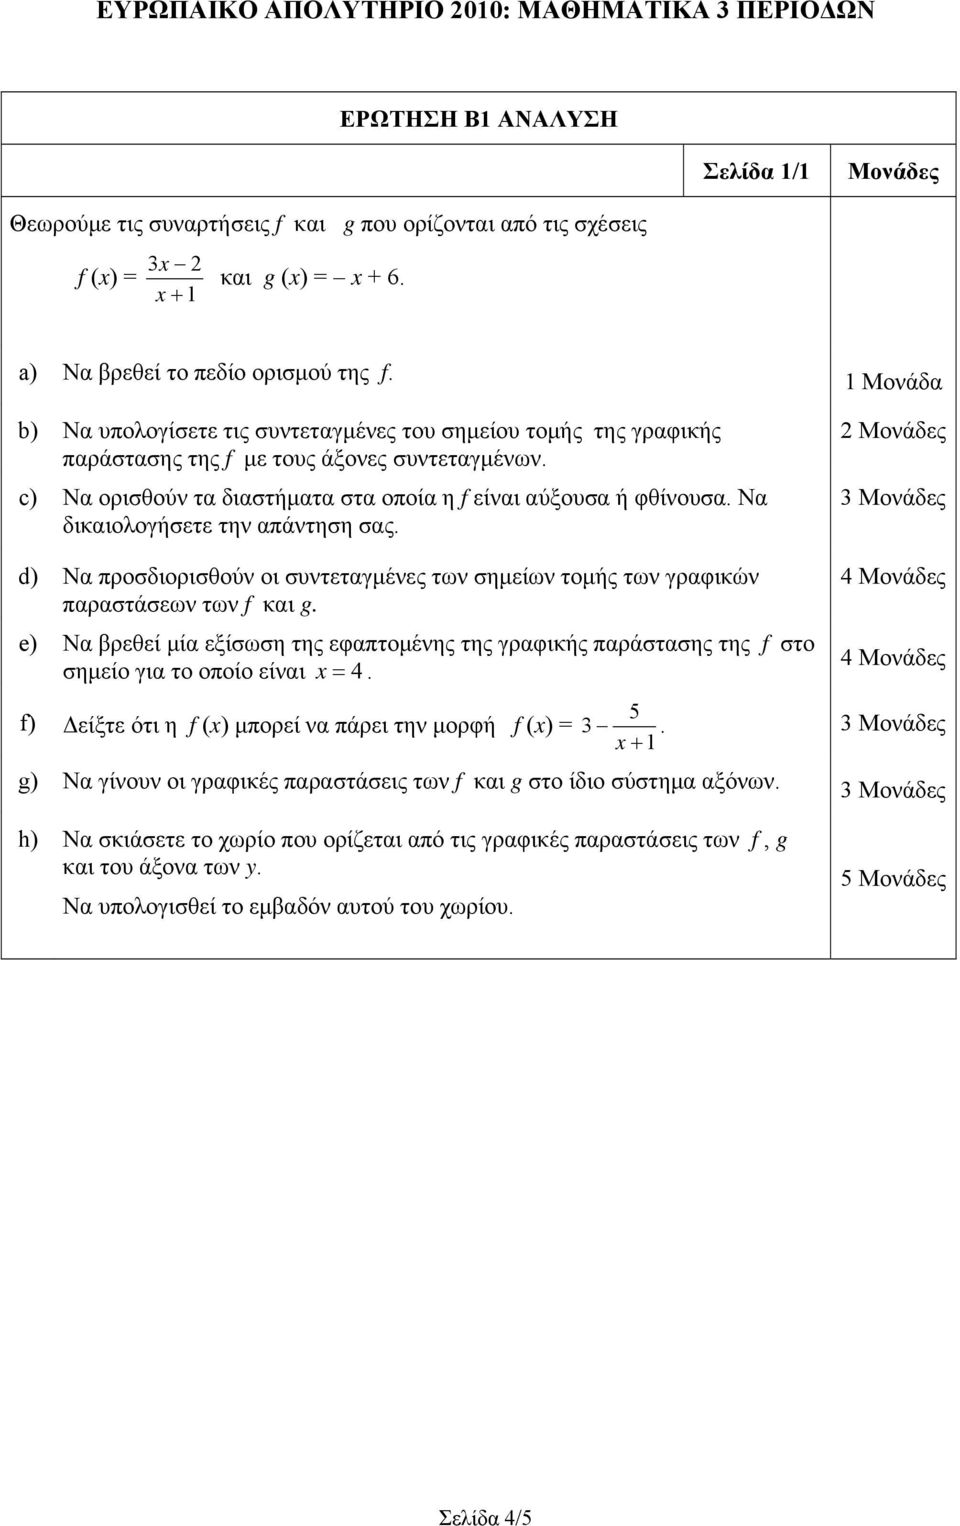 Να δικαιολογήσετε την απάντηση σας. 3 d) Να προσδιορισθούν οι συντεταγμένες των σημείων τομής των γραφικών παραστάσεων των f και g.